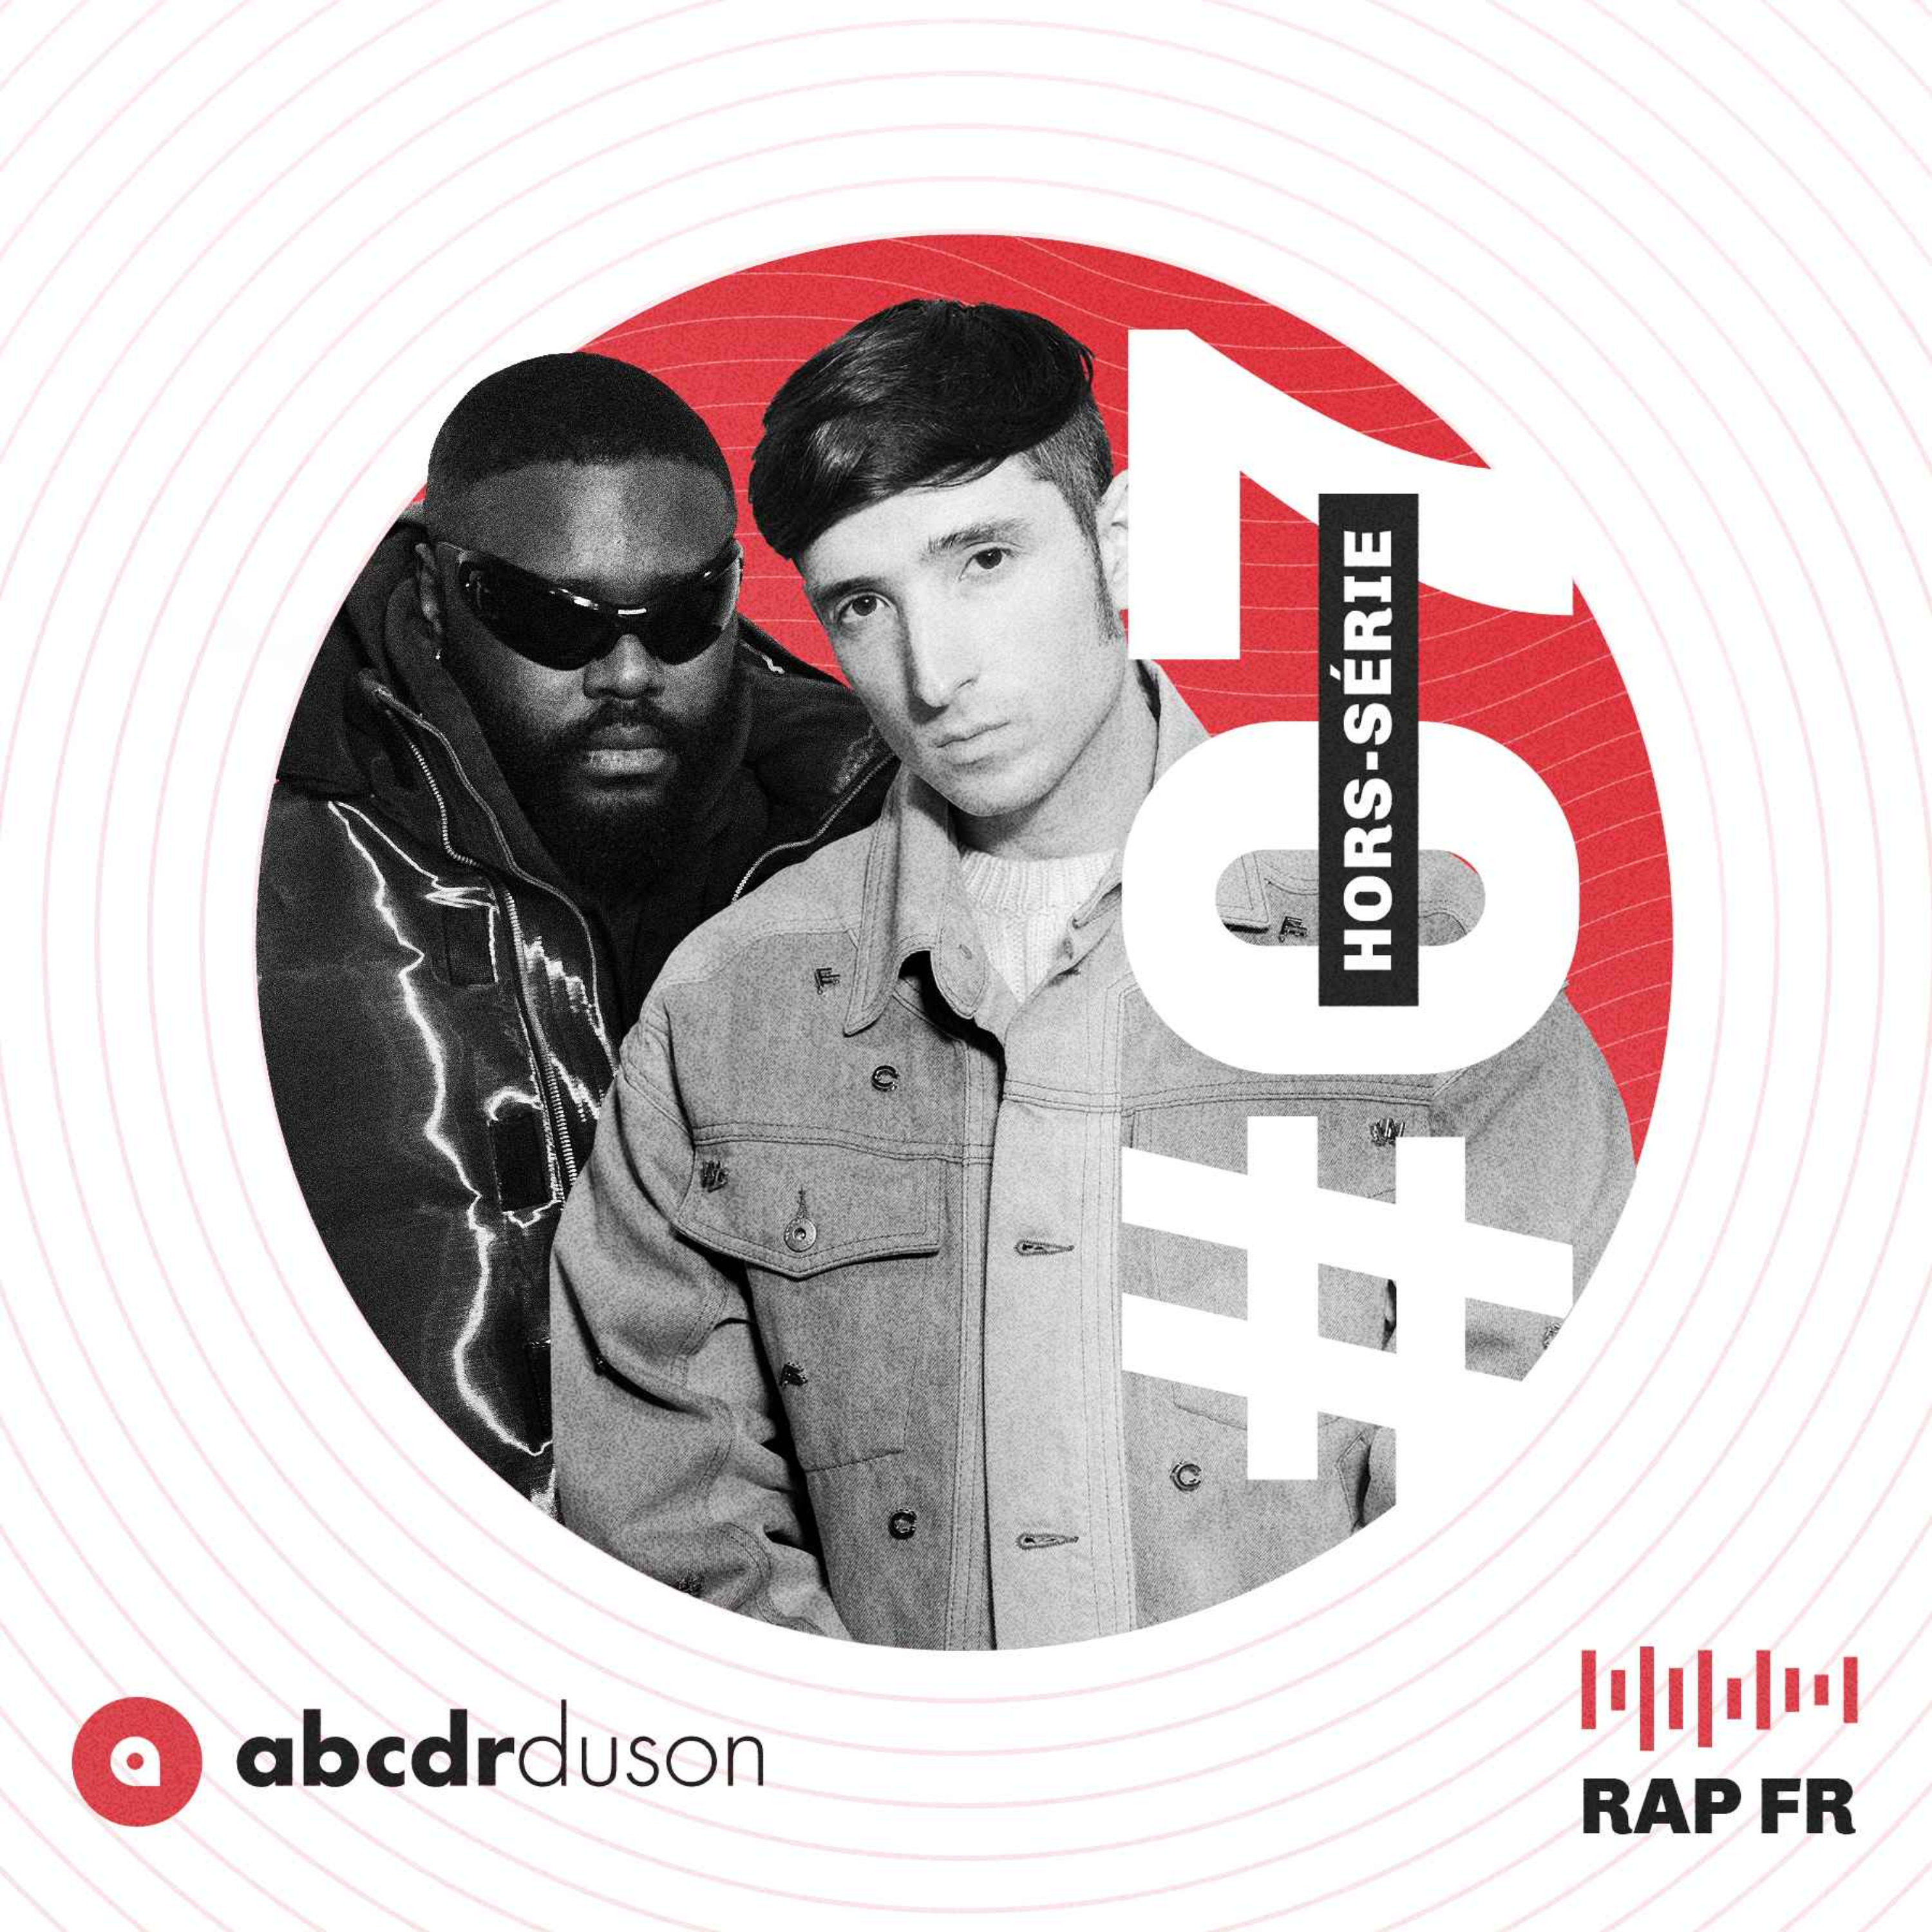 Le rap américain du troisième trimestre 2019 - Abcdr du Son - Binge Audio